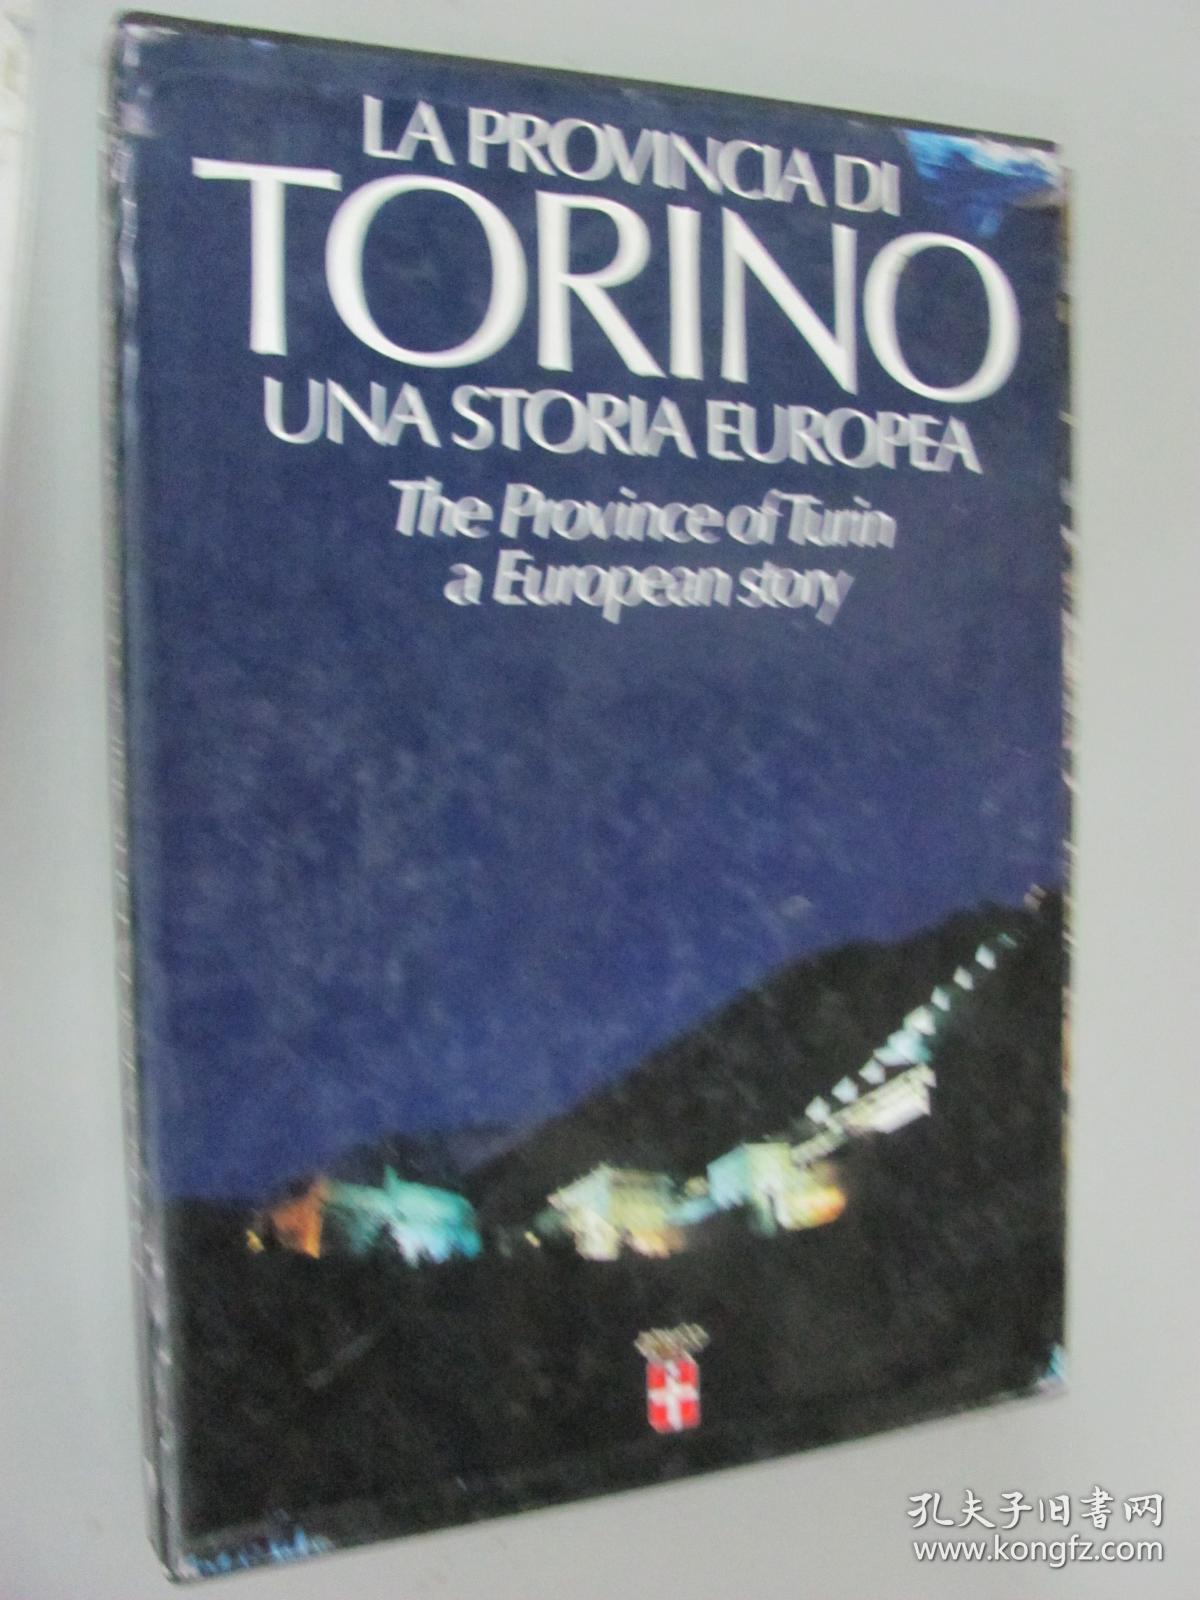 LA PROVINCIADI TORNIO UNA STORIA EUROPEA  THE PROVINECE OF TUIN A EUOPEAN STORY